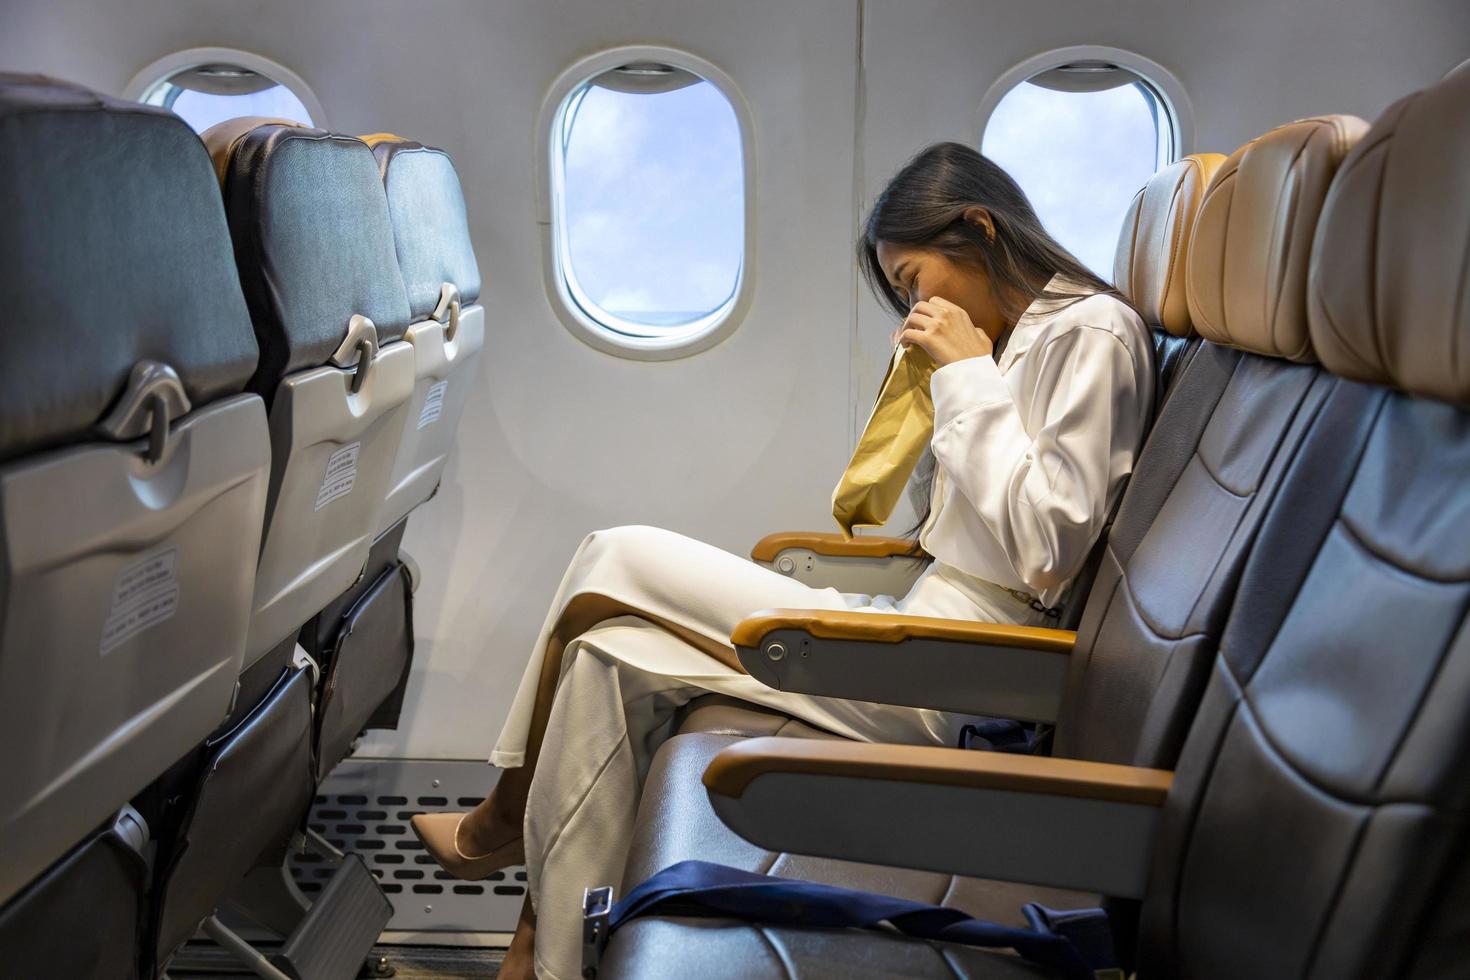 mujer asiática está vomitando en el avión durante el vuelo usando una bolsa de vómito debido al movimiento y la enfermedad del viaje que causan mareos por concepto de aerofobia y transporte foto